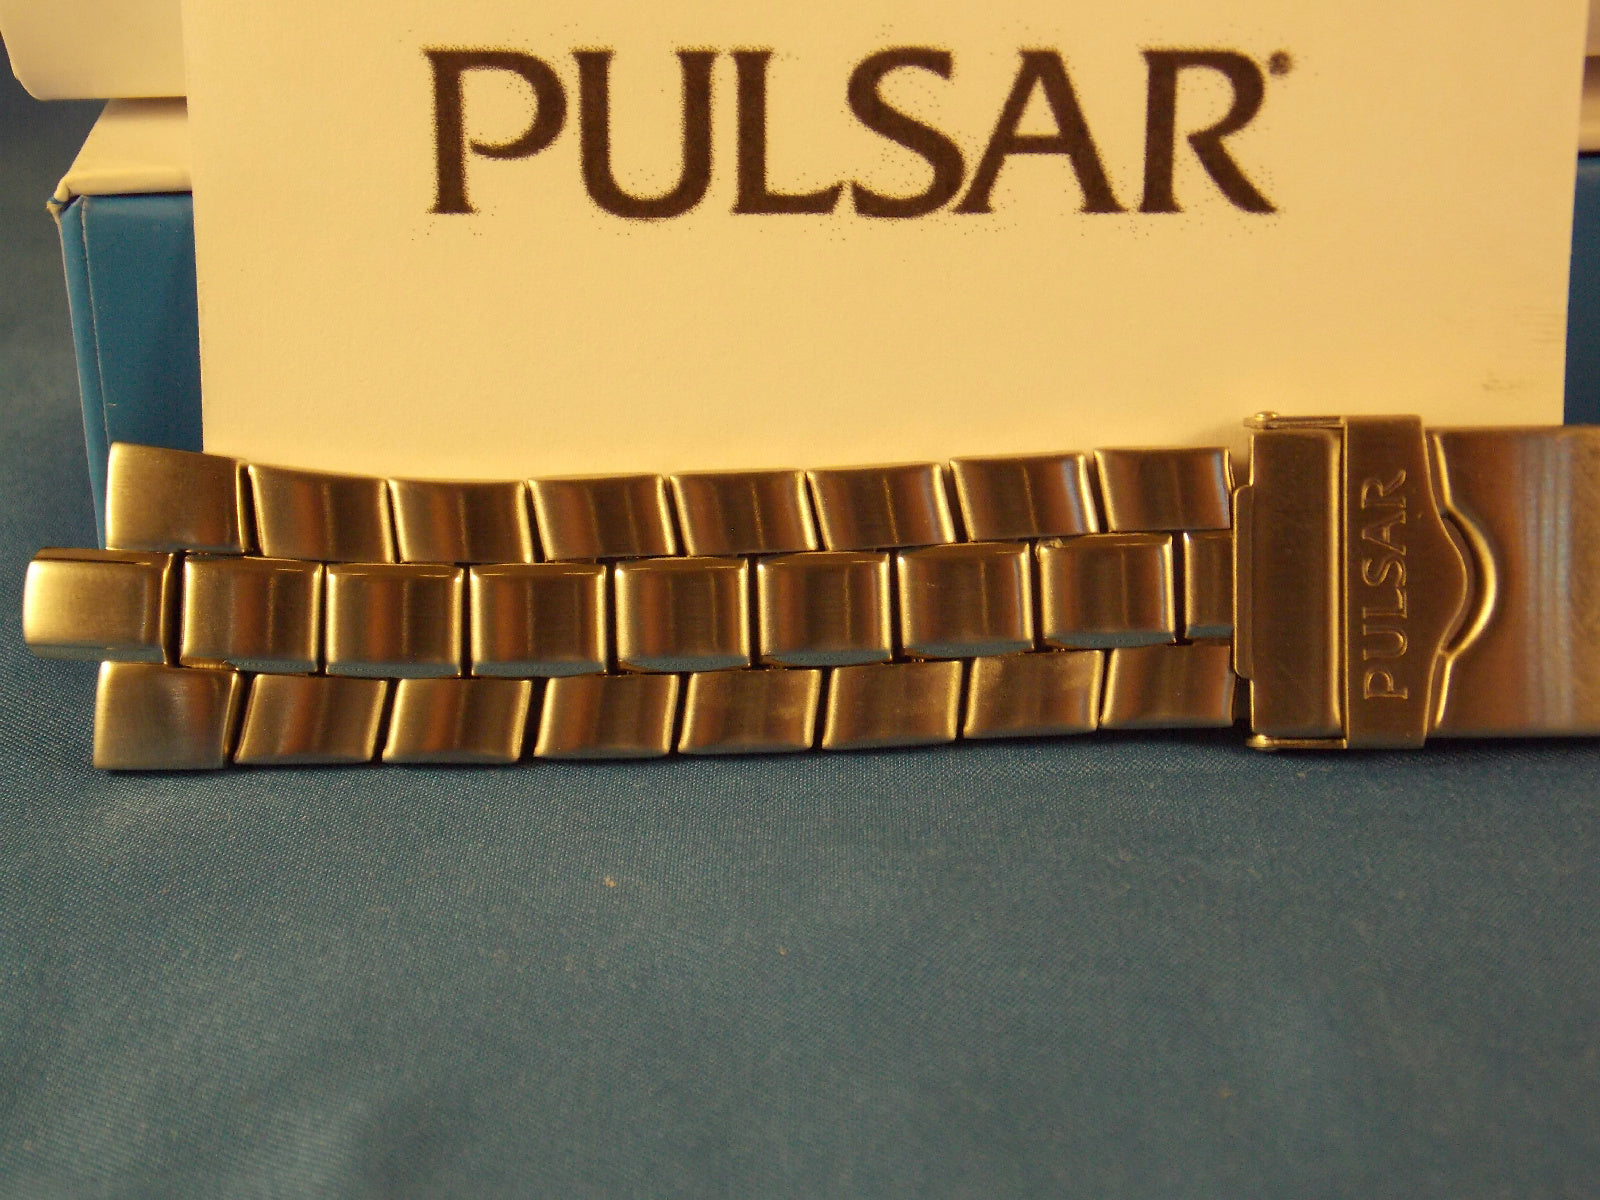 Pulsar watchband PBK013 All Steel/Silver Tone Bracelet.  Back # V072-0050